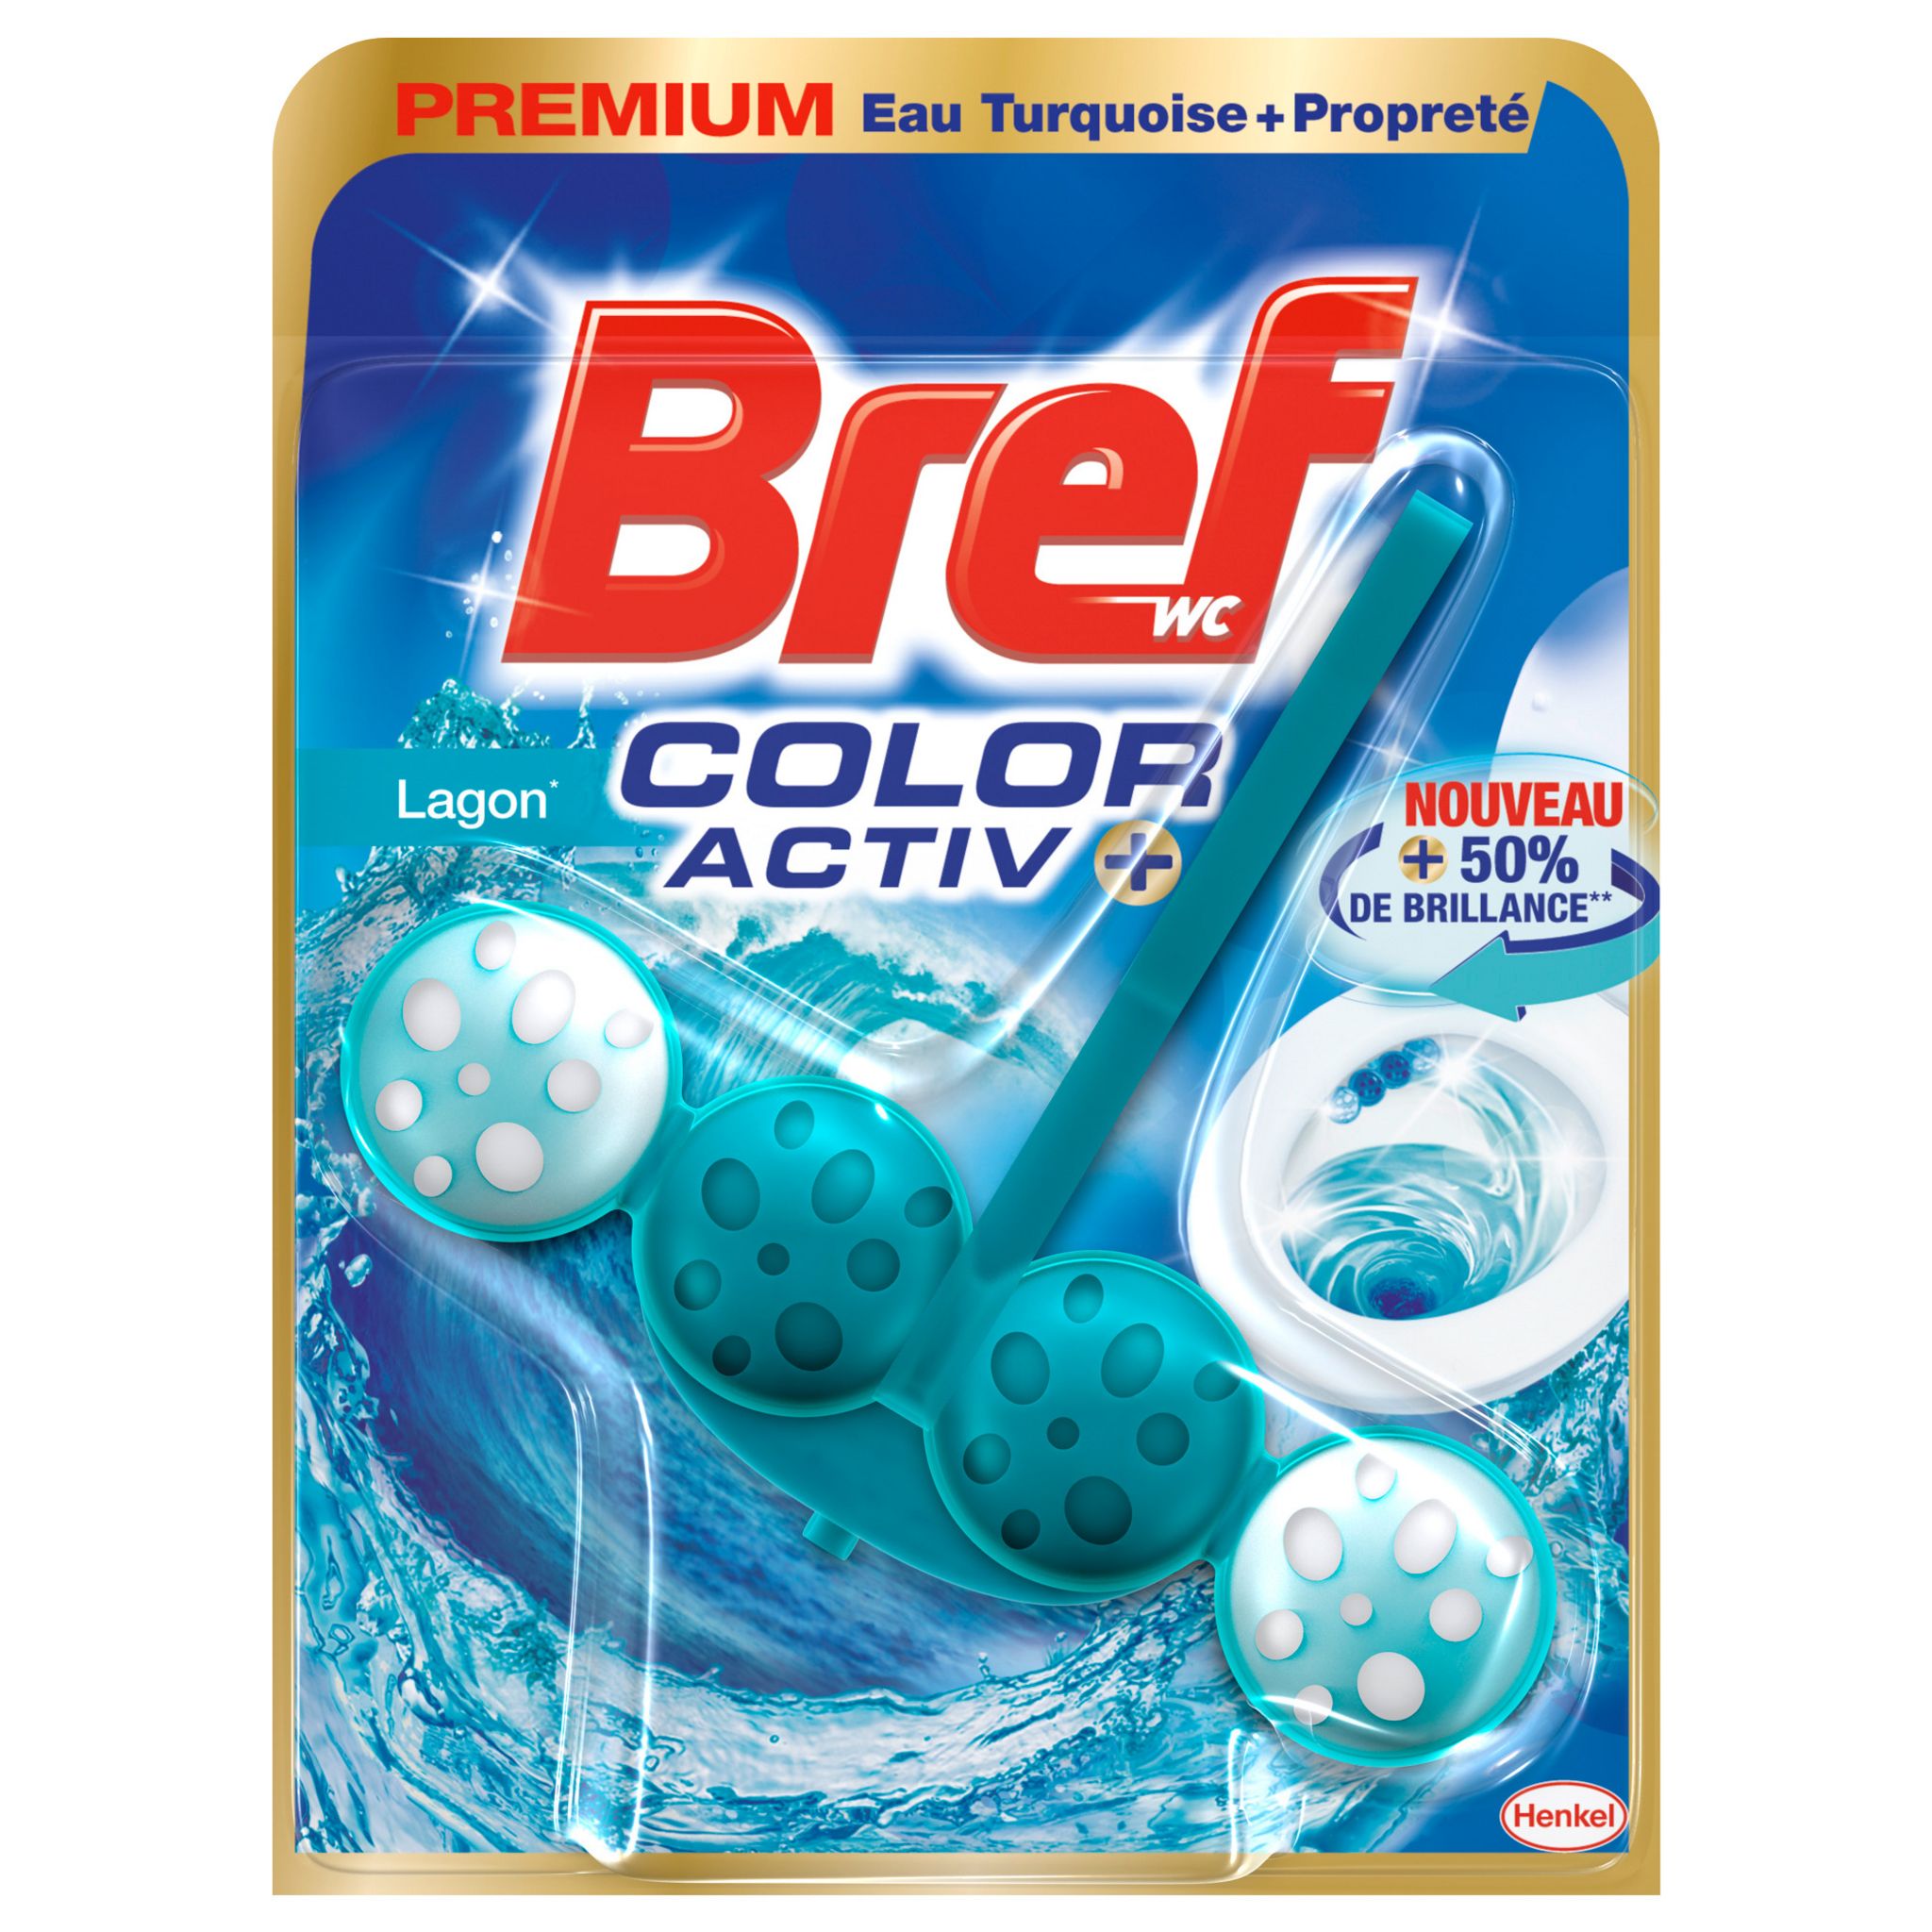 BREF WC Color Activ+ Bloc WC lagon 1 bloc pas cher 